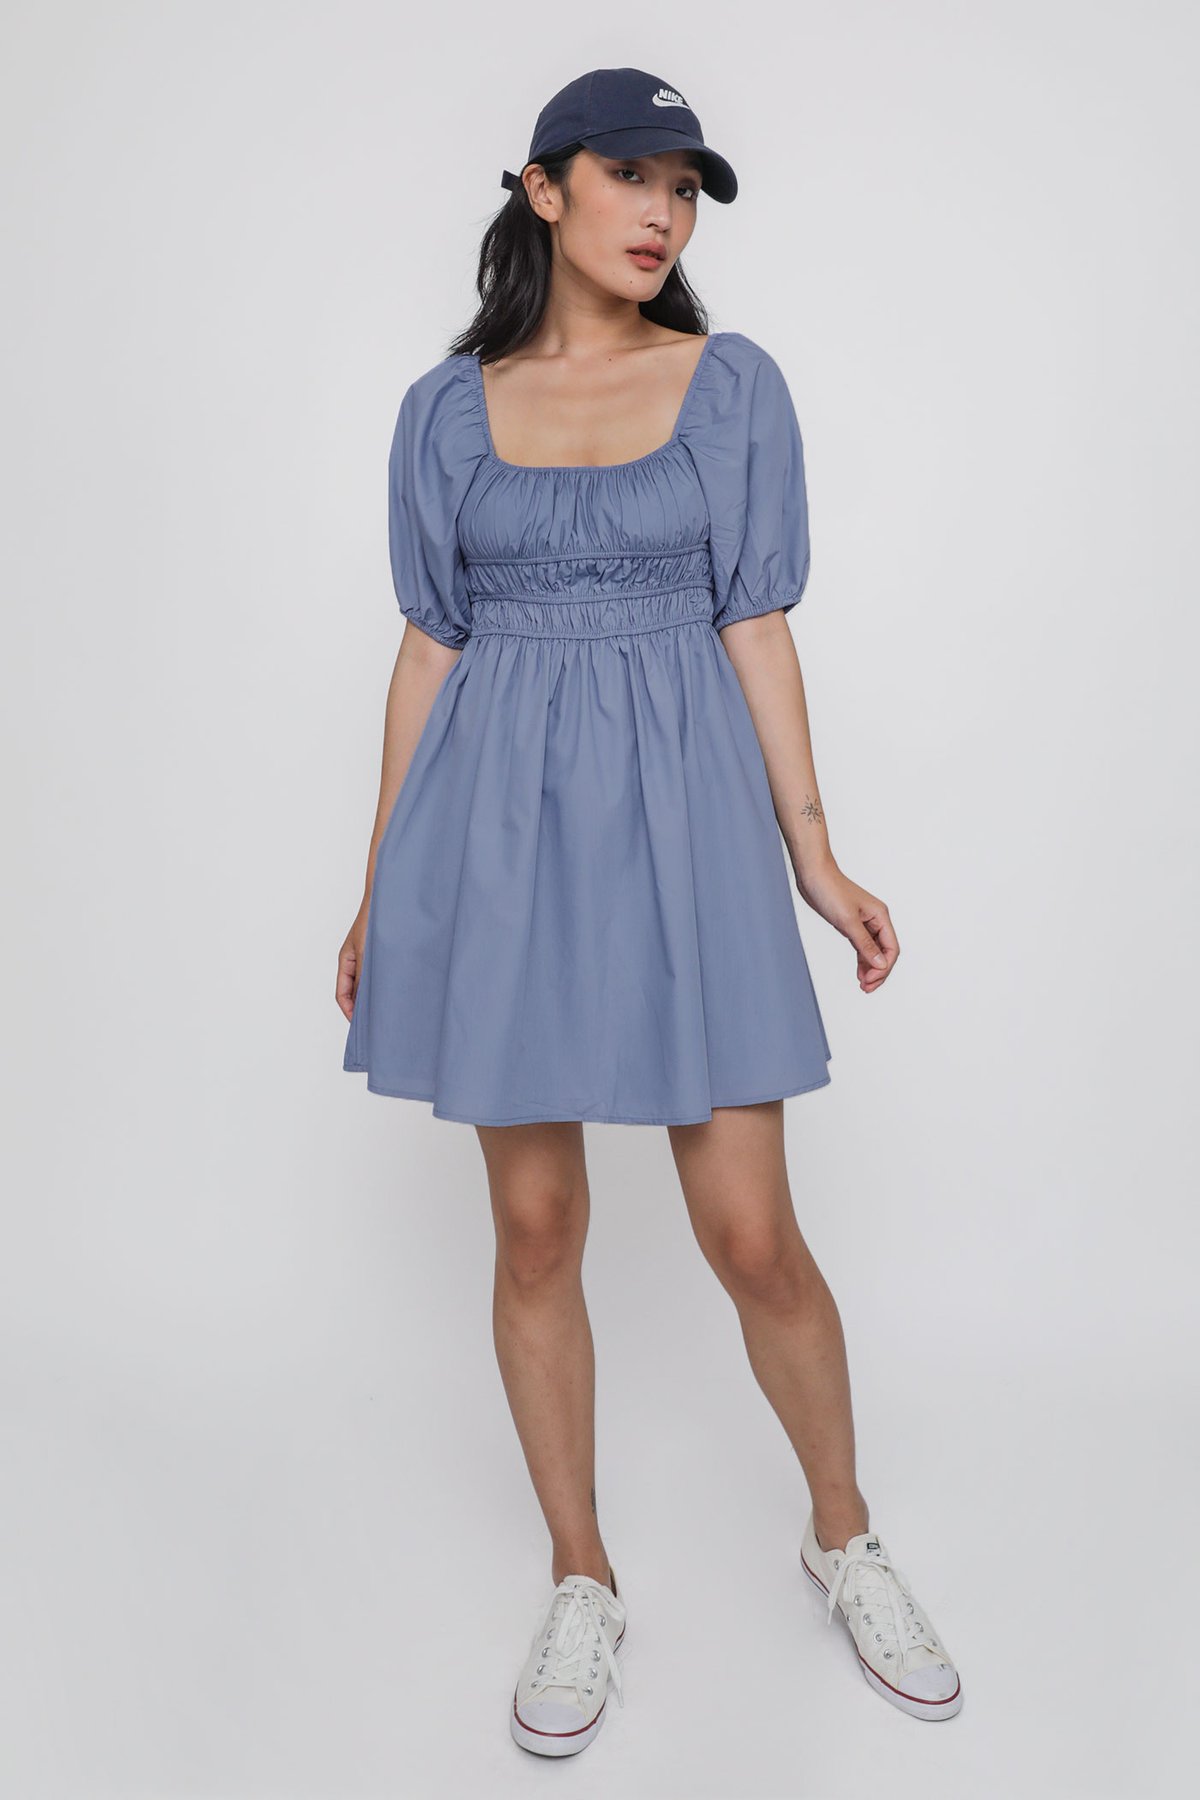 Adalyn Shirred Puffy Sleeved Dress (Periwinkle)